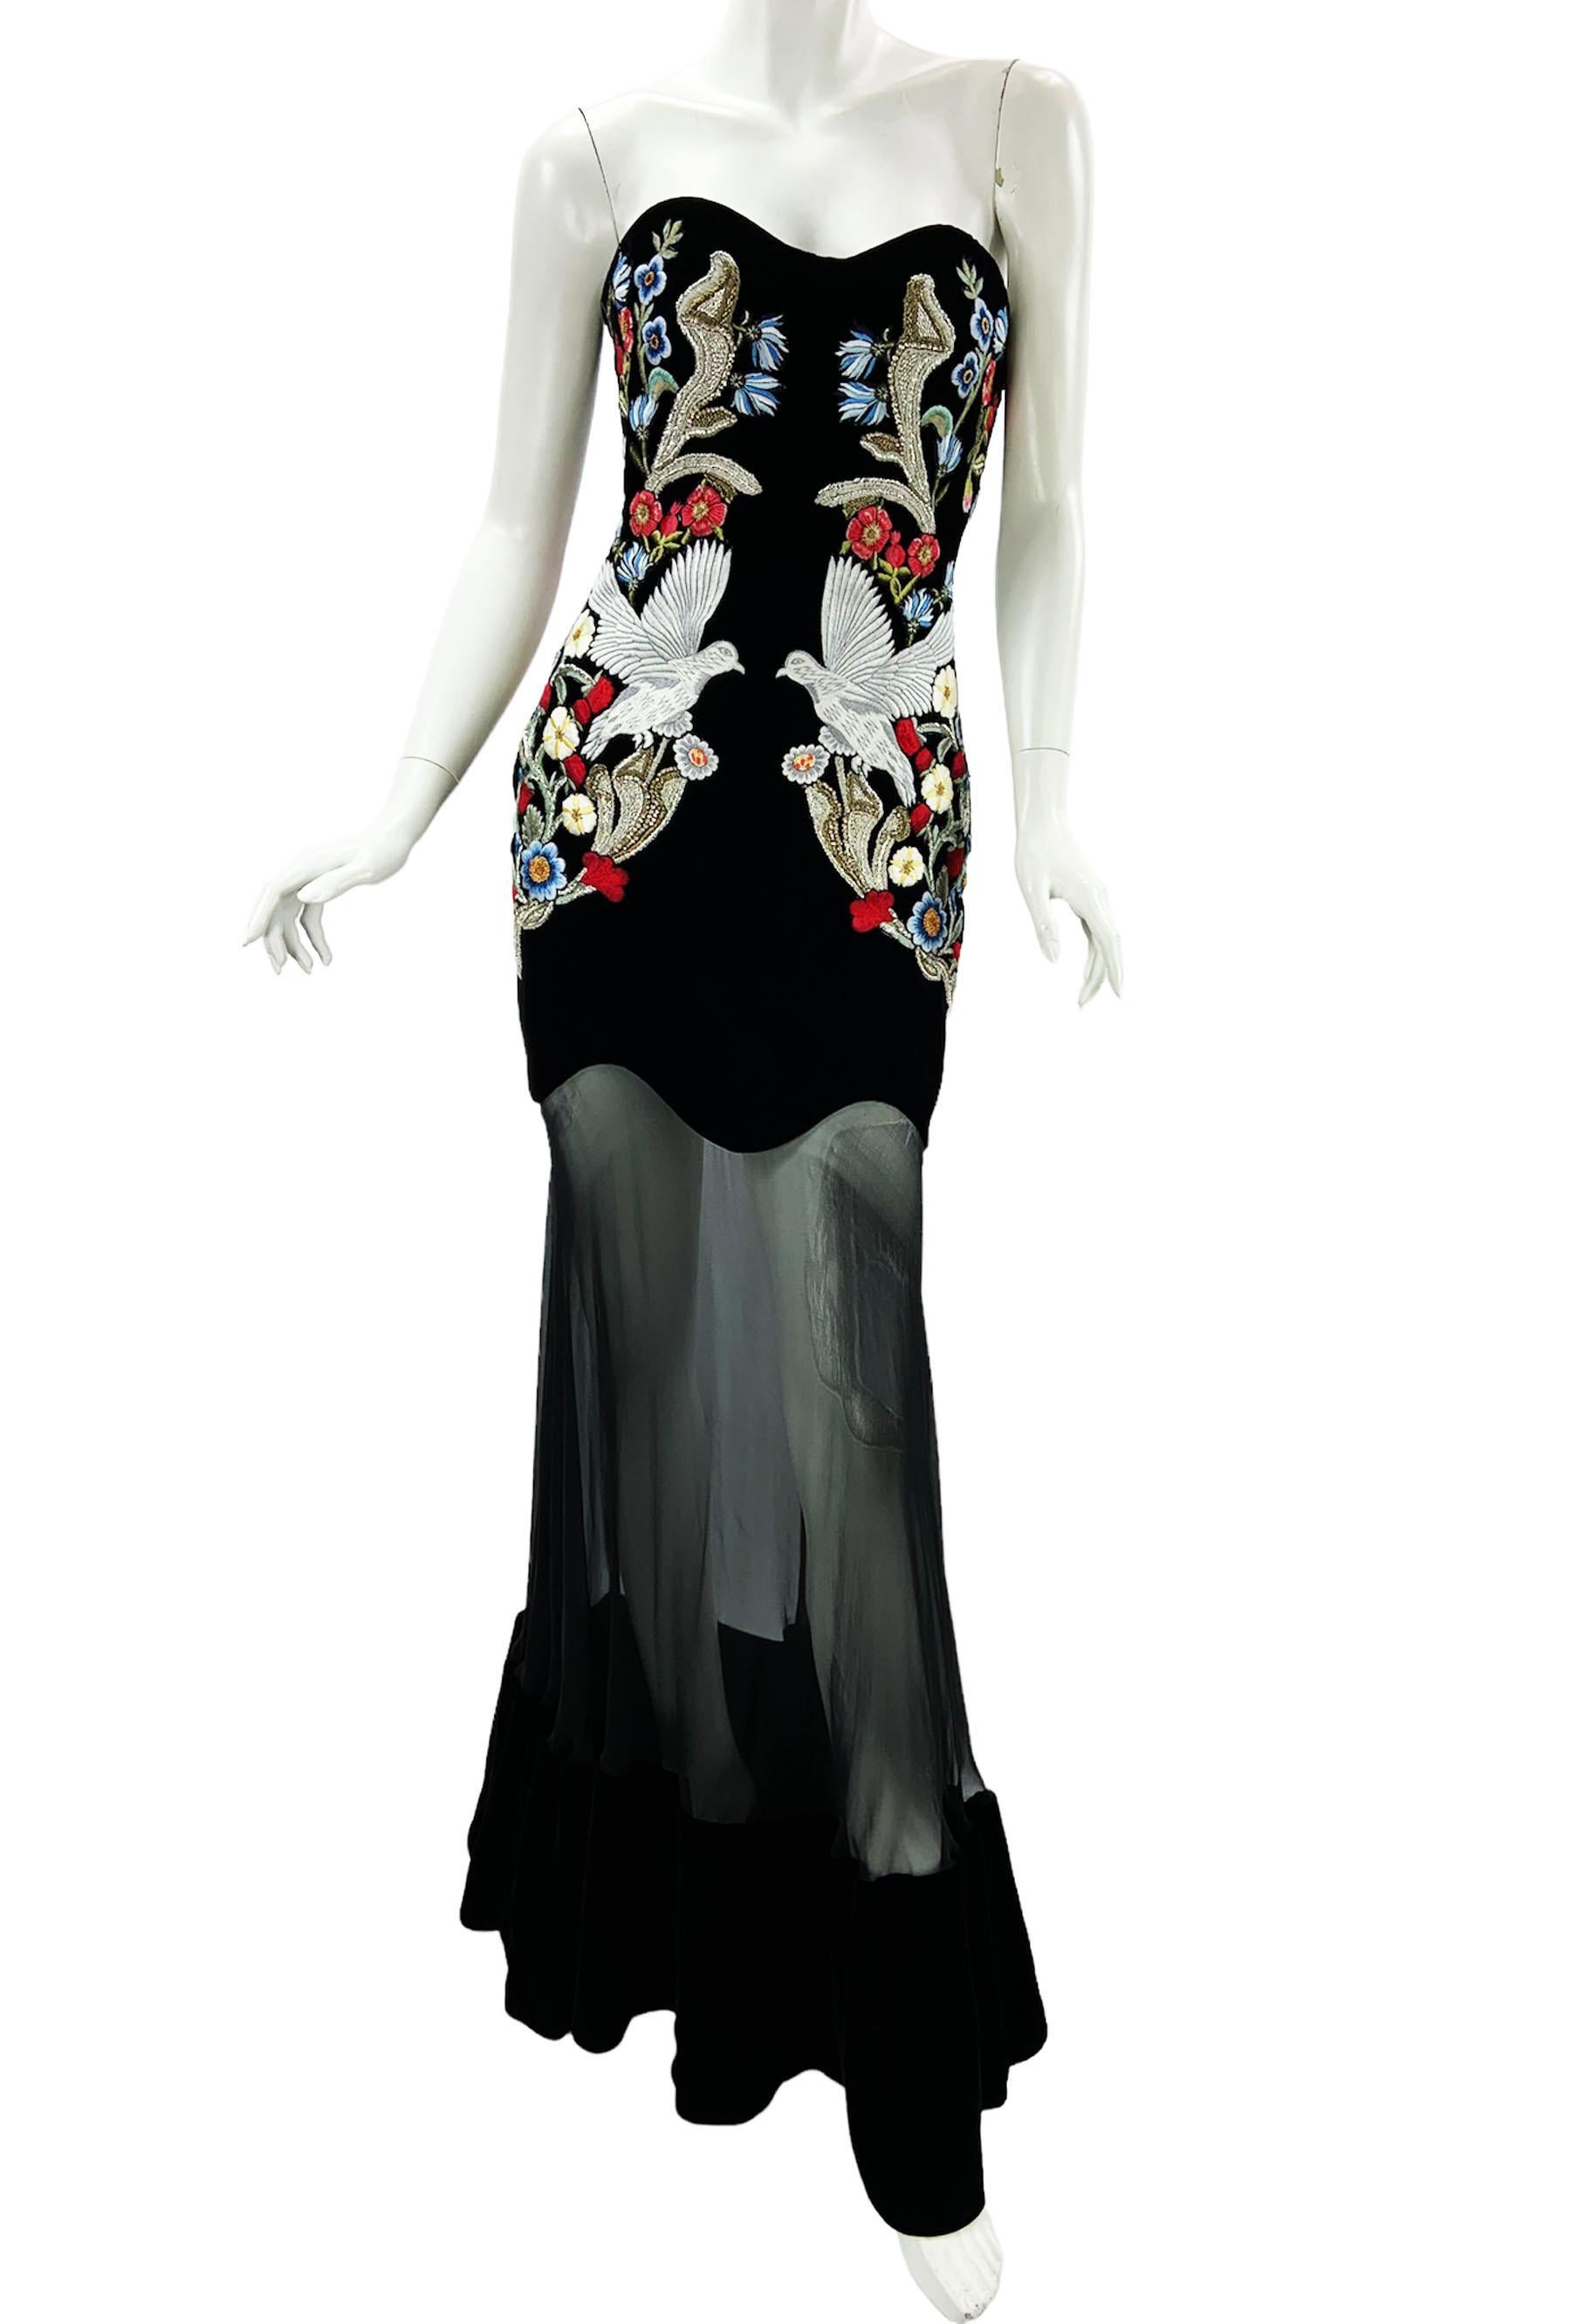 Alexander McQueen - Robe habillée en mousseline de velours noir avec ornements
Jessica Chastain portait une robe Alexander McQueen lors du gala d'ouverture du 70e Festival de Cannes, le 17 mai 2017.
Taille italienne 42
Riche velours noir combiné à